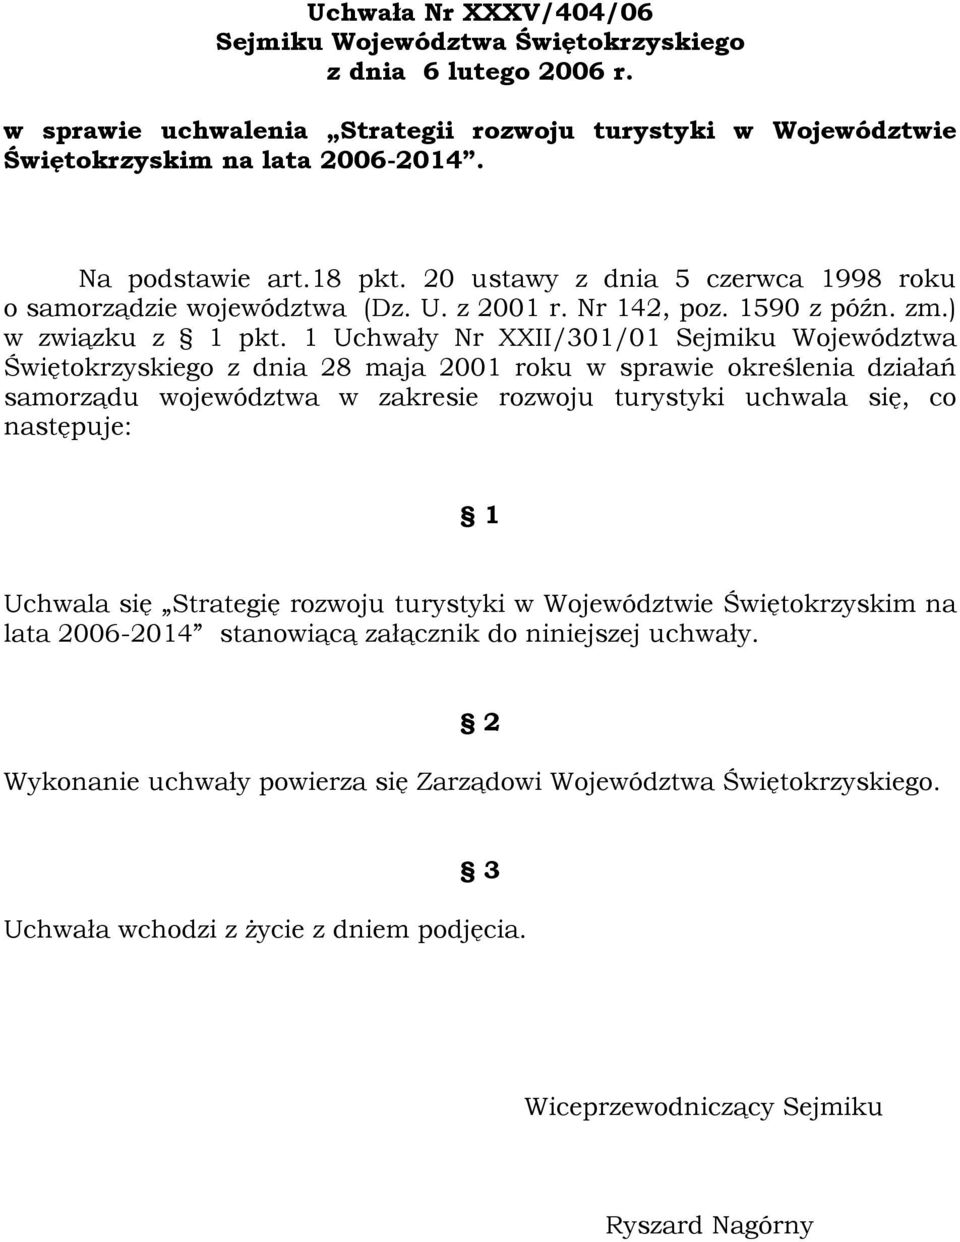 1 Uchwały Nr XXII/301/01 Sejmiku Województwa Świętokrzyskiego z dnia 28 maja 2001 roku w sprawie określenia działań samorządu województwa w zakresie rozwoju turystyki uchwala się, co następuje: 1